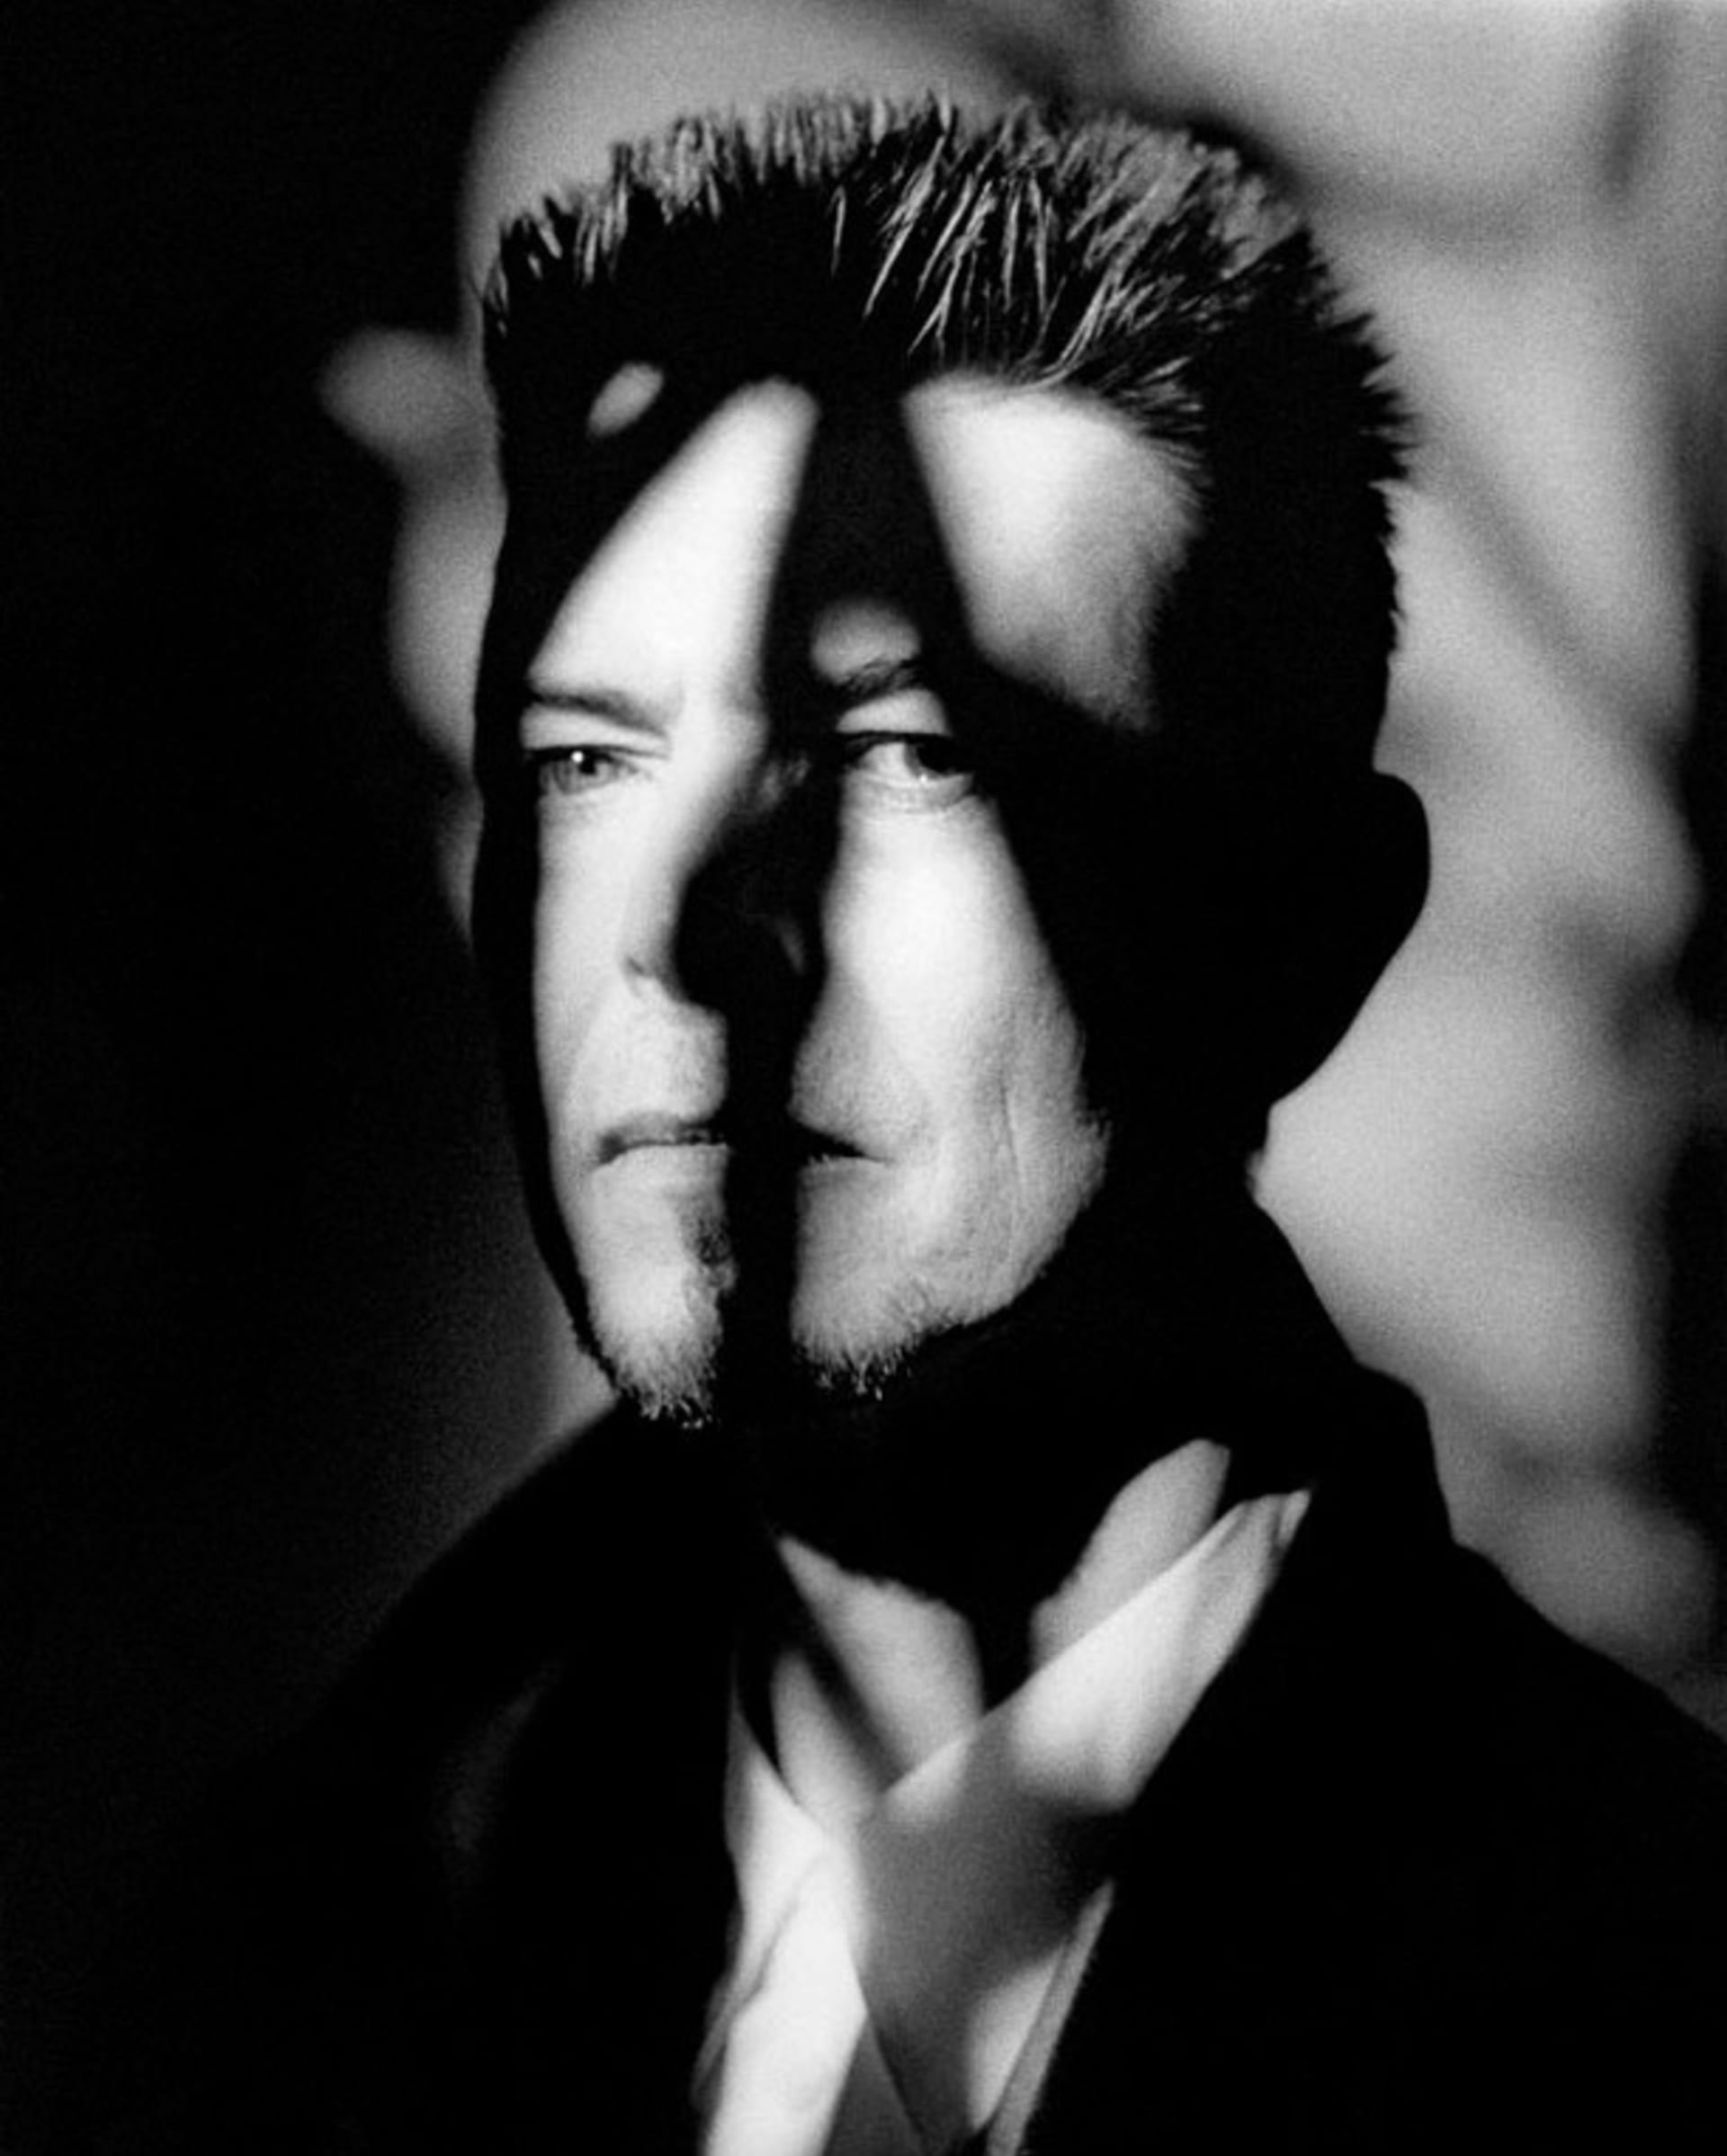 David Bowie na snímku od Antonína Kratochvíla